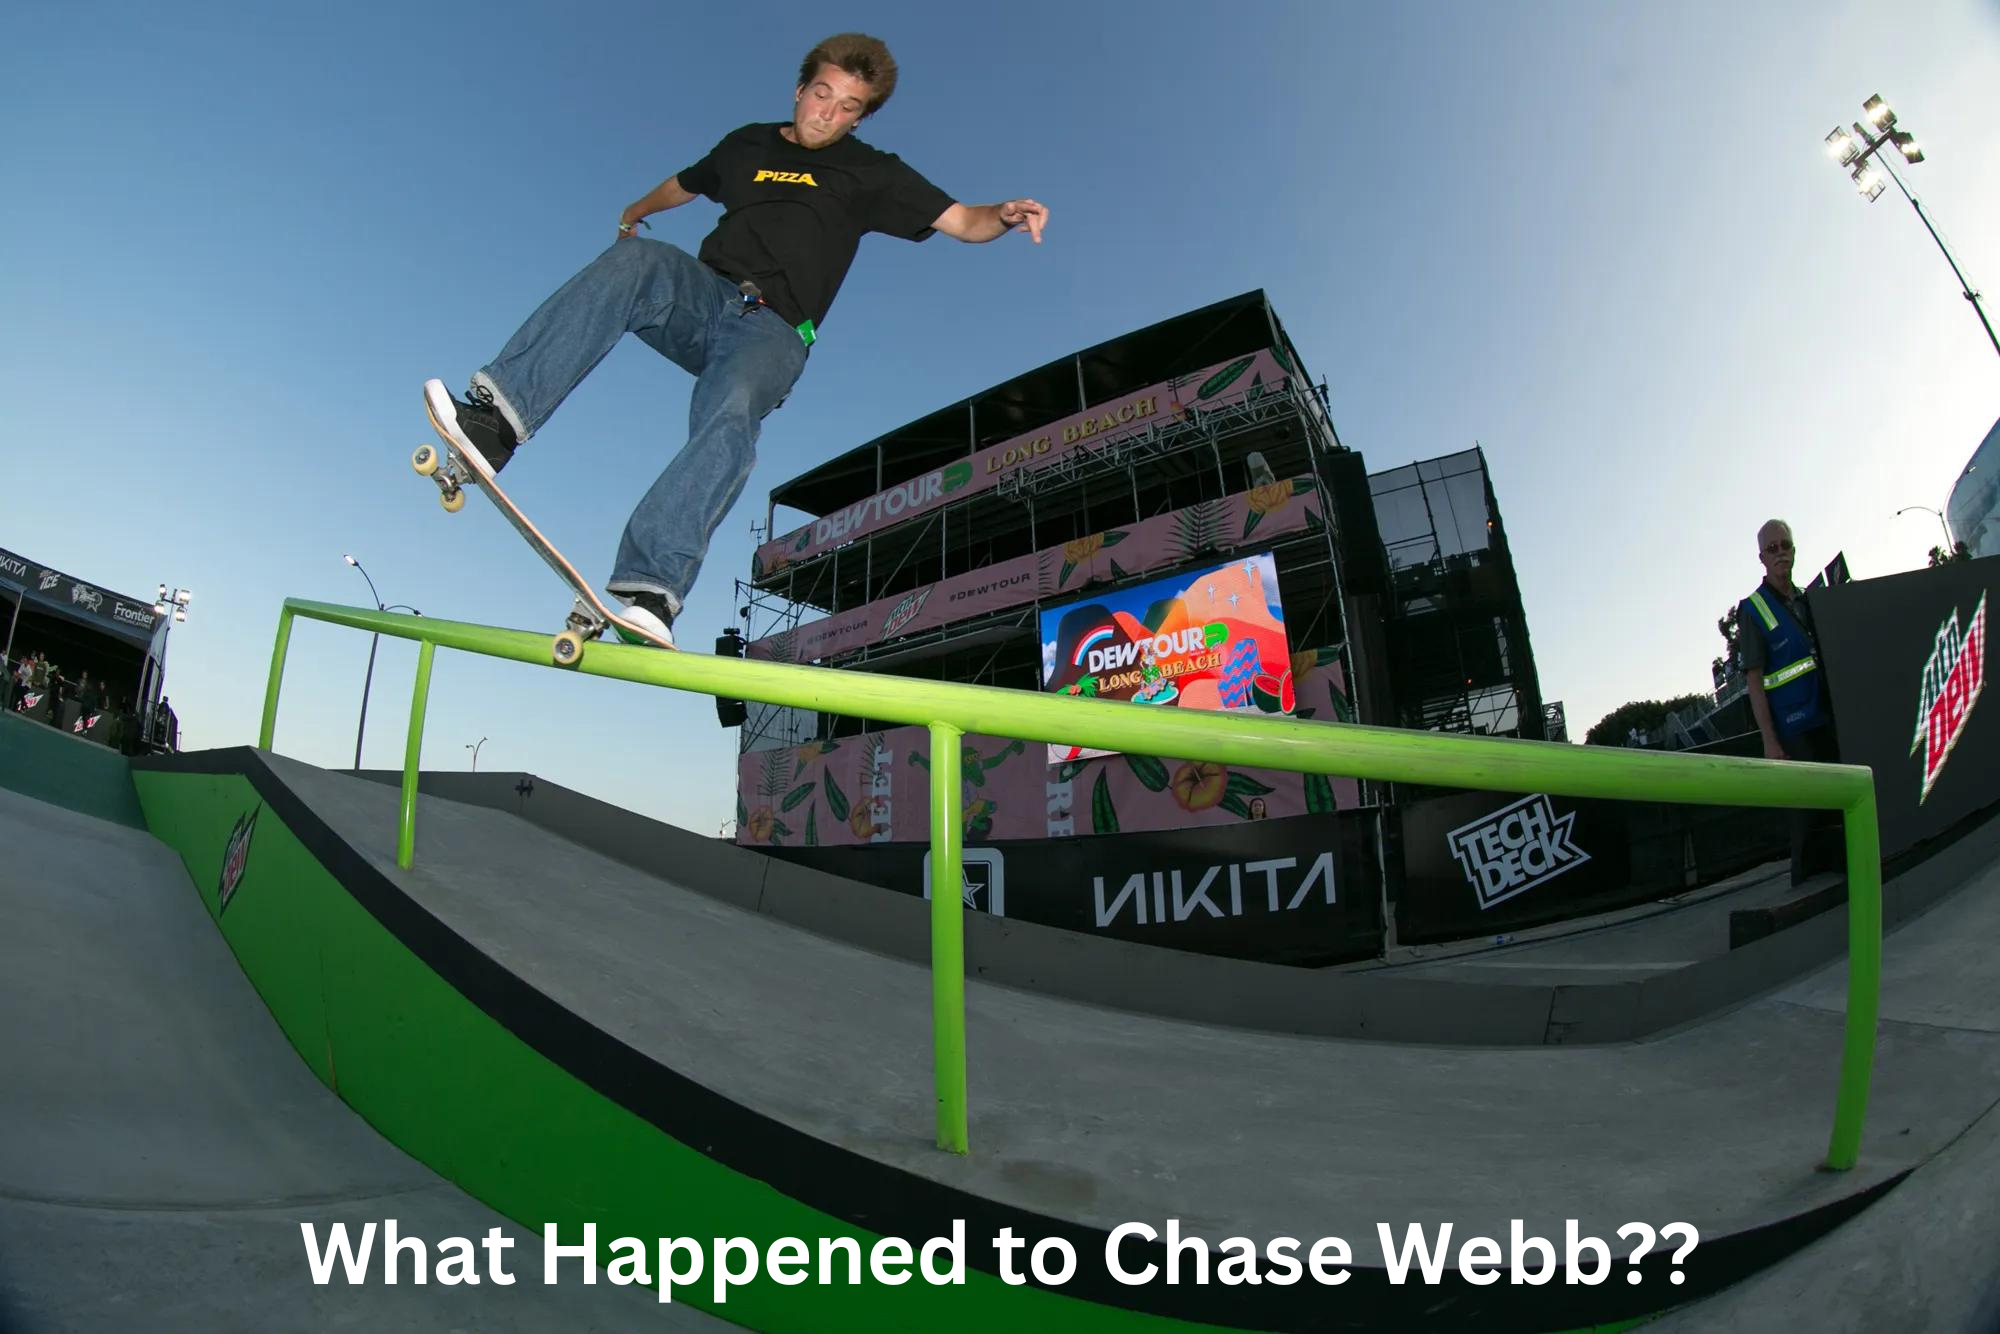 Chase Webb